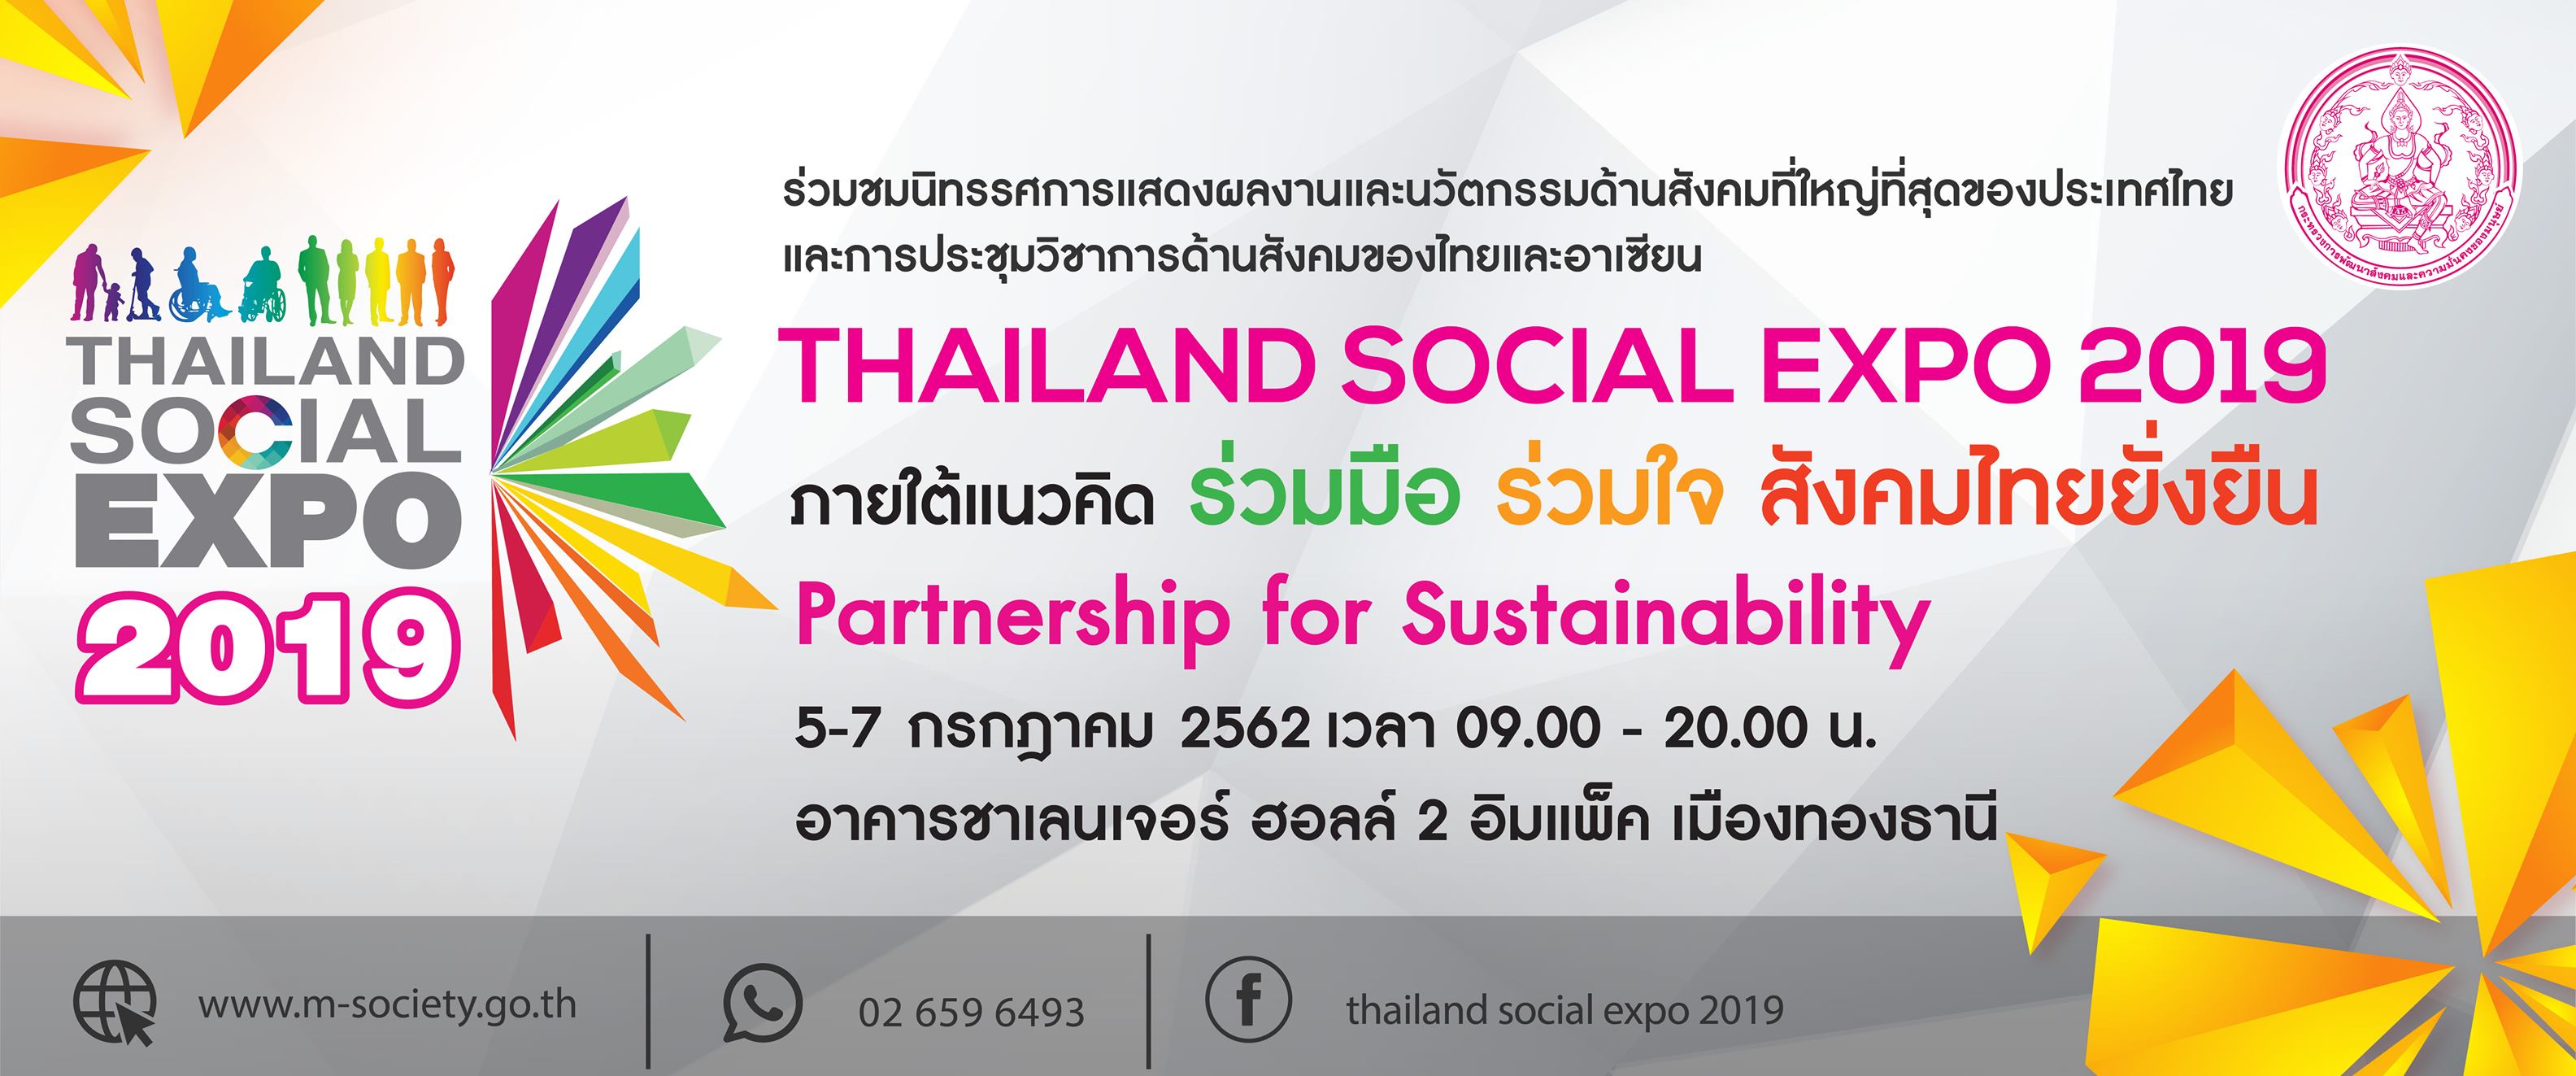 Thailand Social Expo 2019